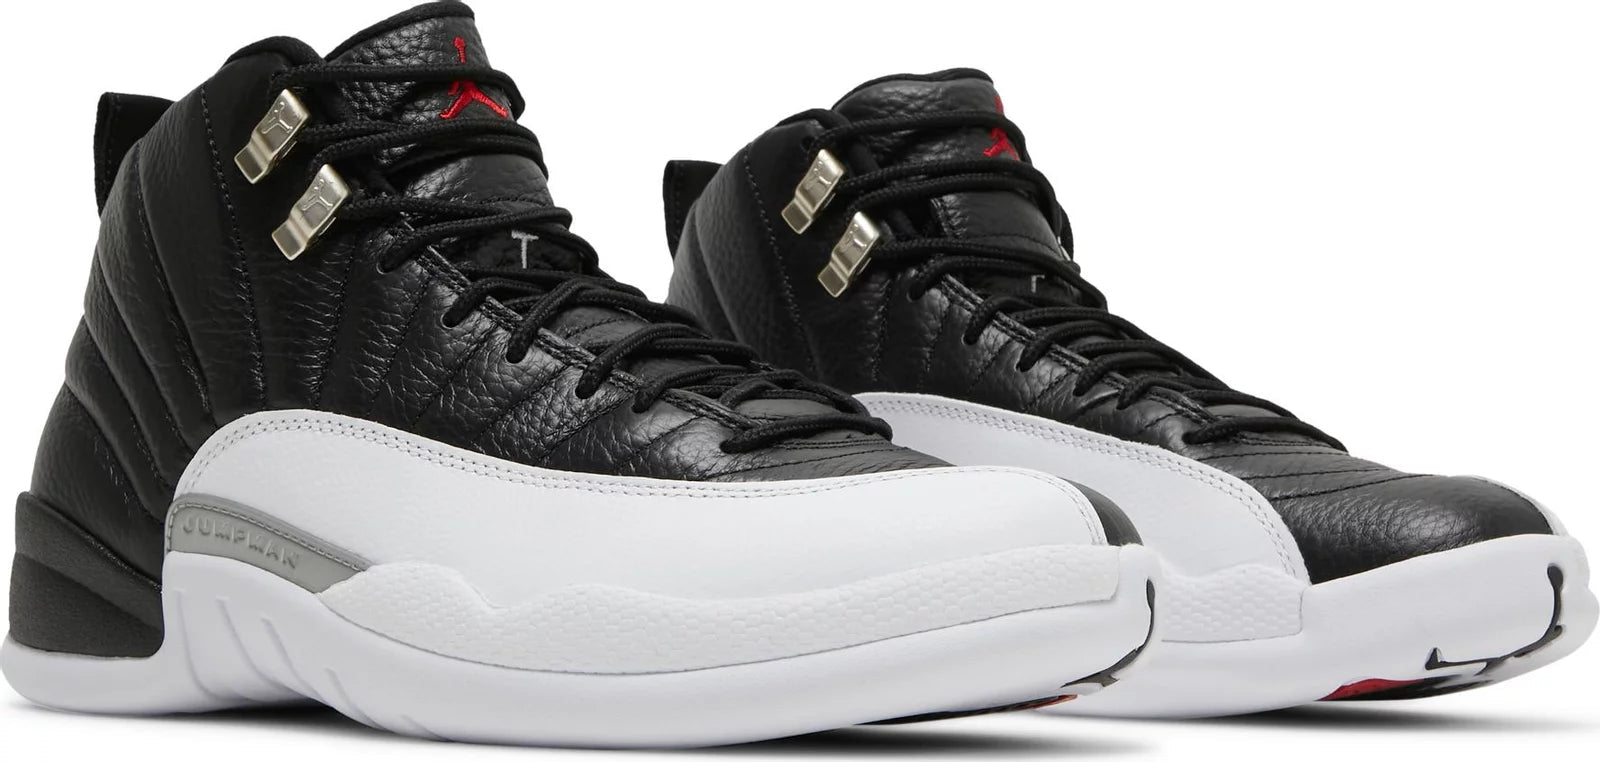 Air Jordan 12 Retro Playoffs - Sneakersbe Sneakers Sale Online